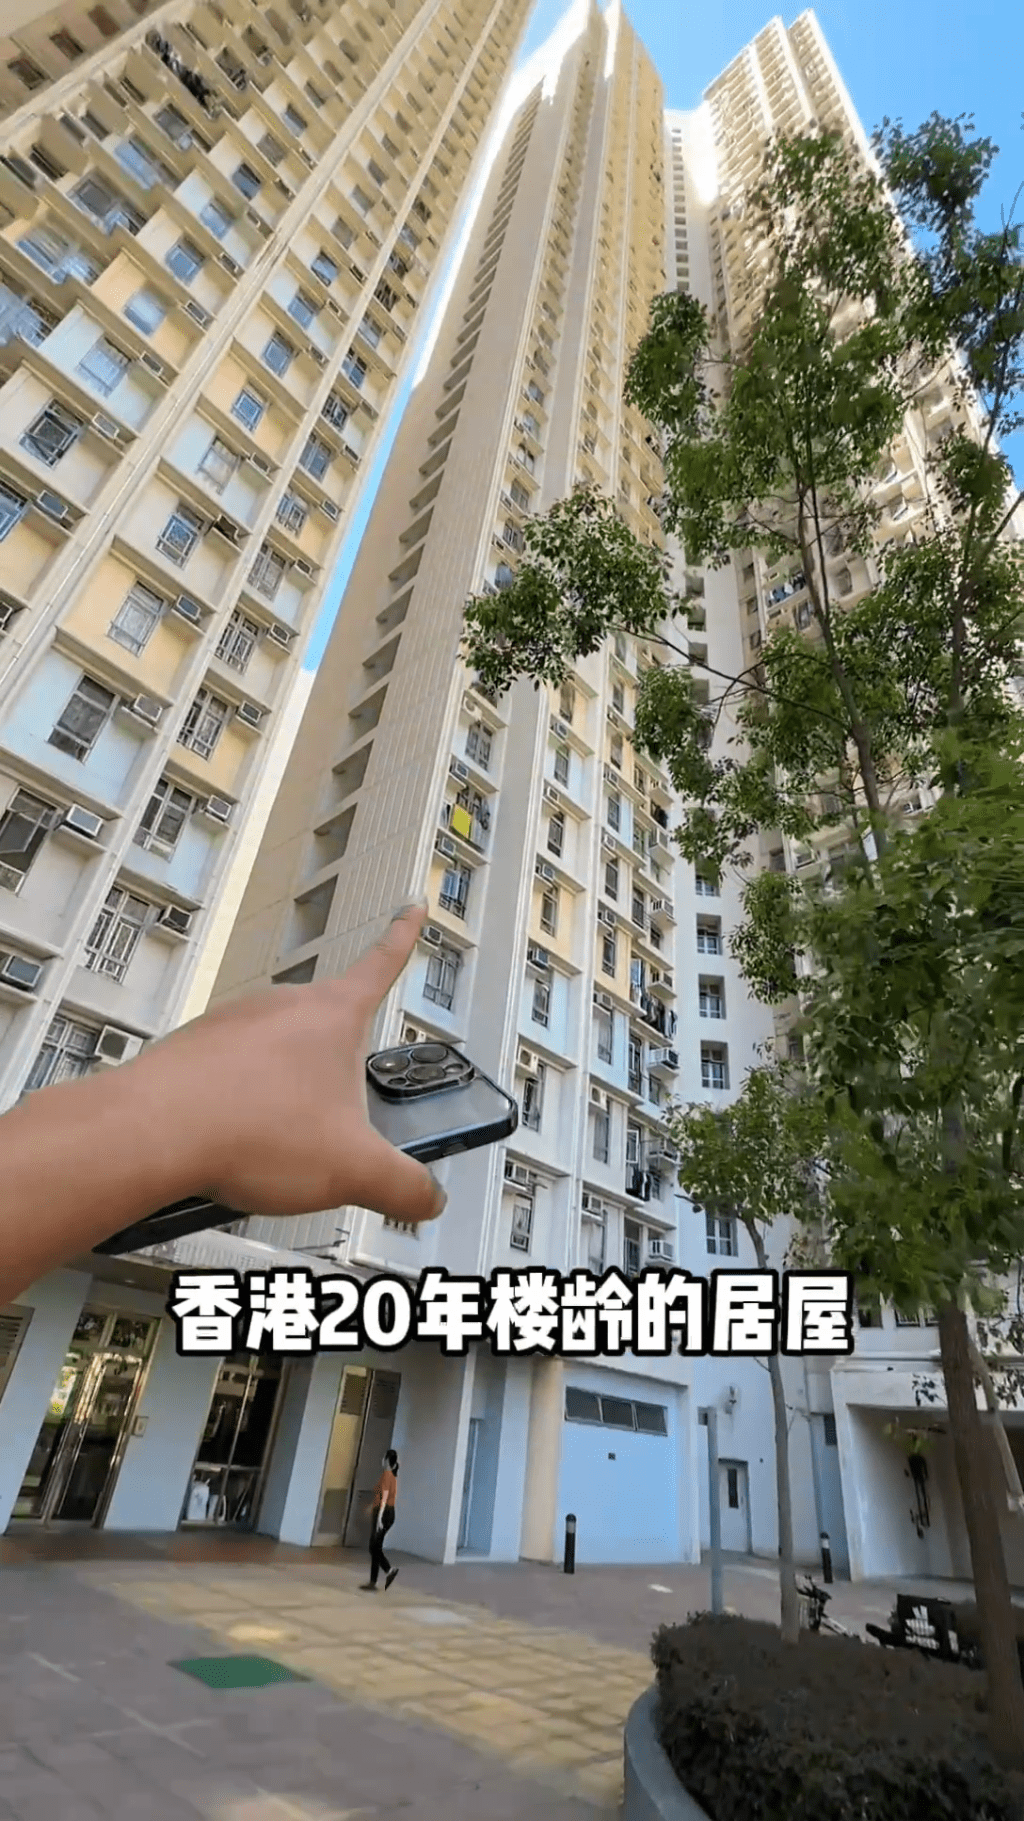 一名湖南来港的女子近日在社交平台，宣称以80万元买入646尺居屋，首期仅付4万元，引起关注，该女子所住居屋。